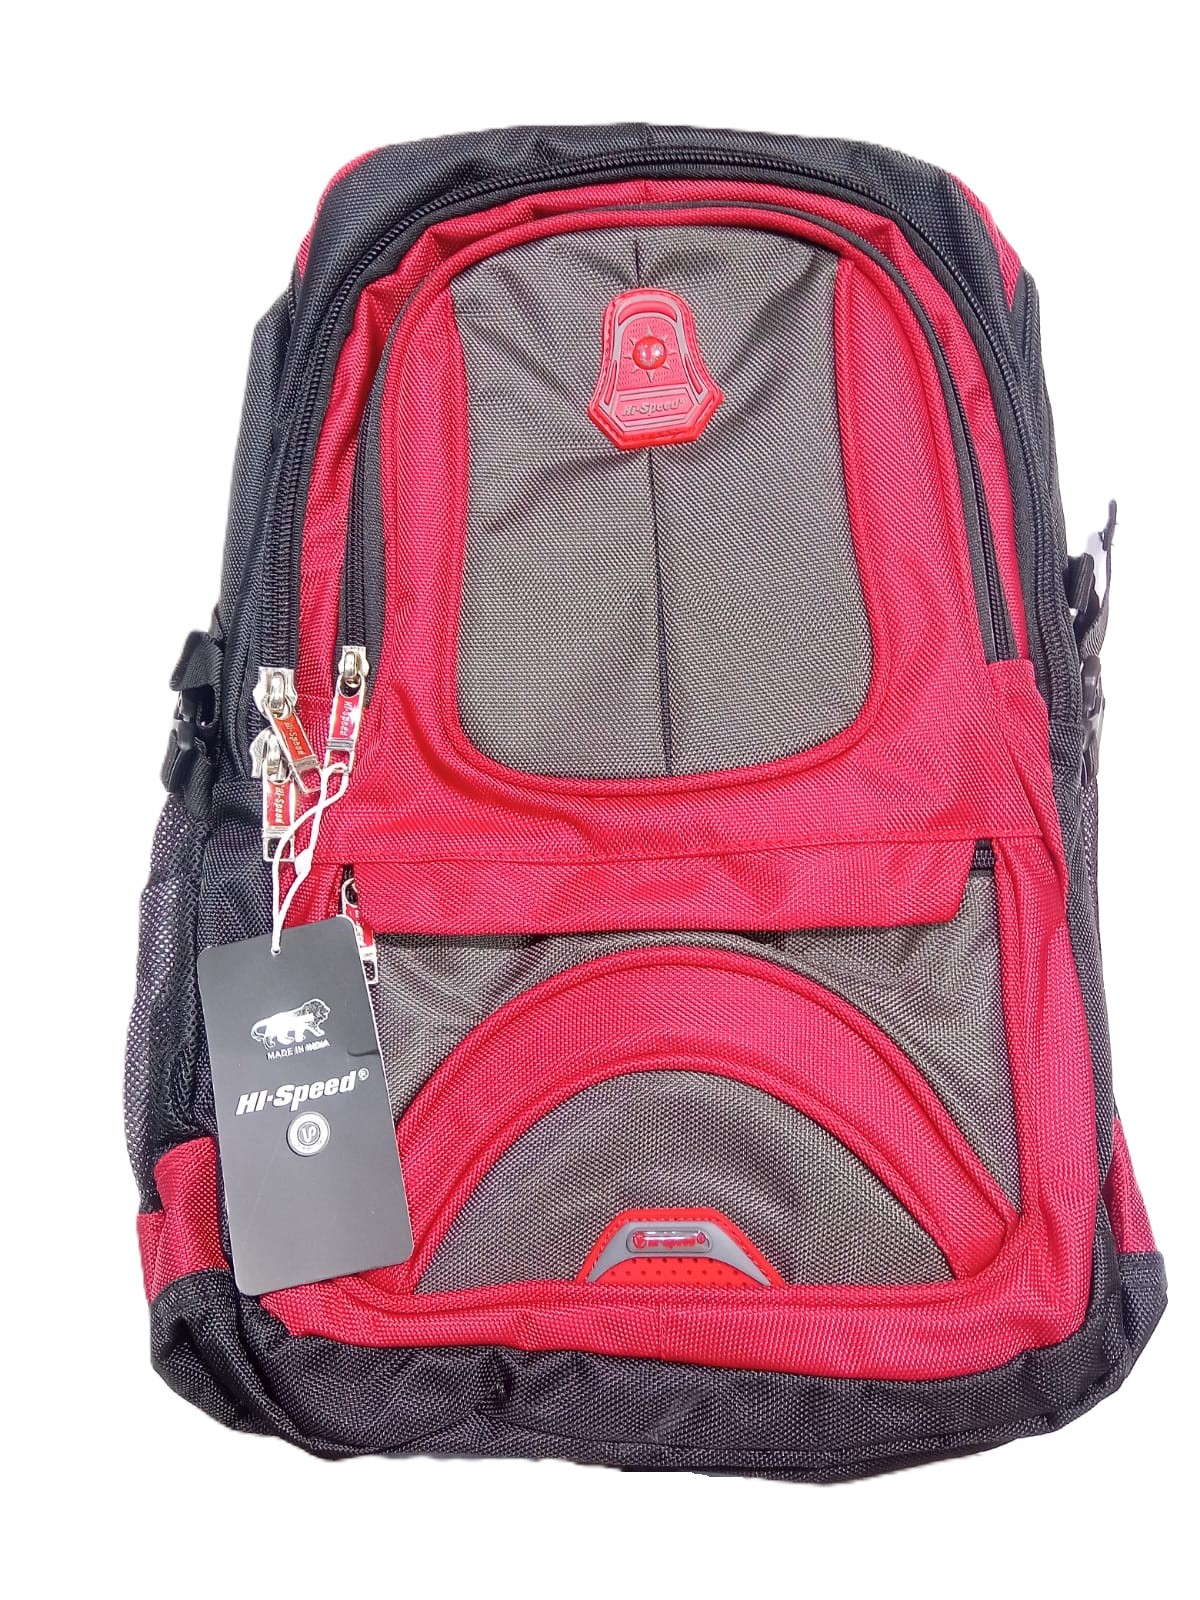 Hi-Speed School Bag